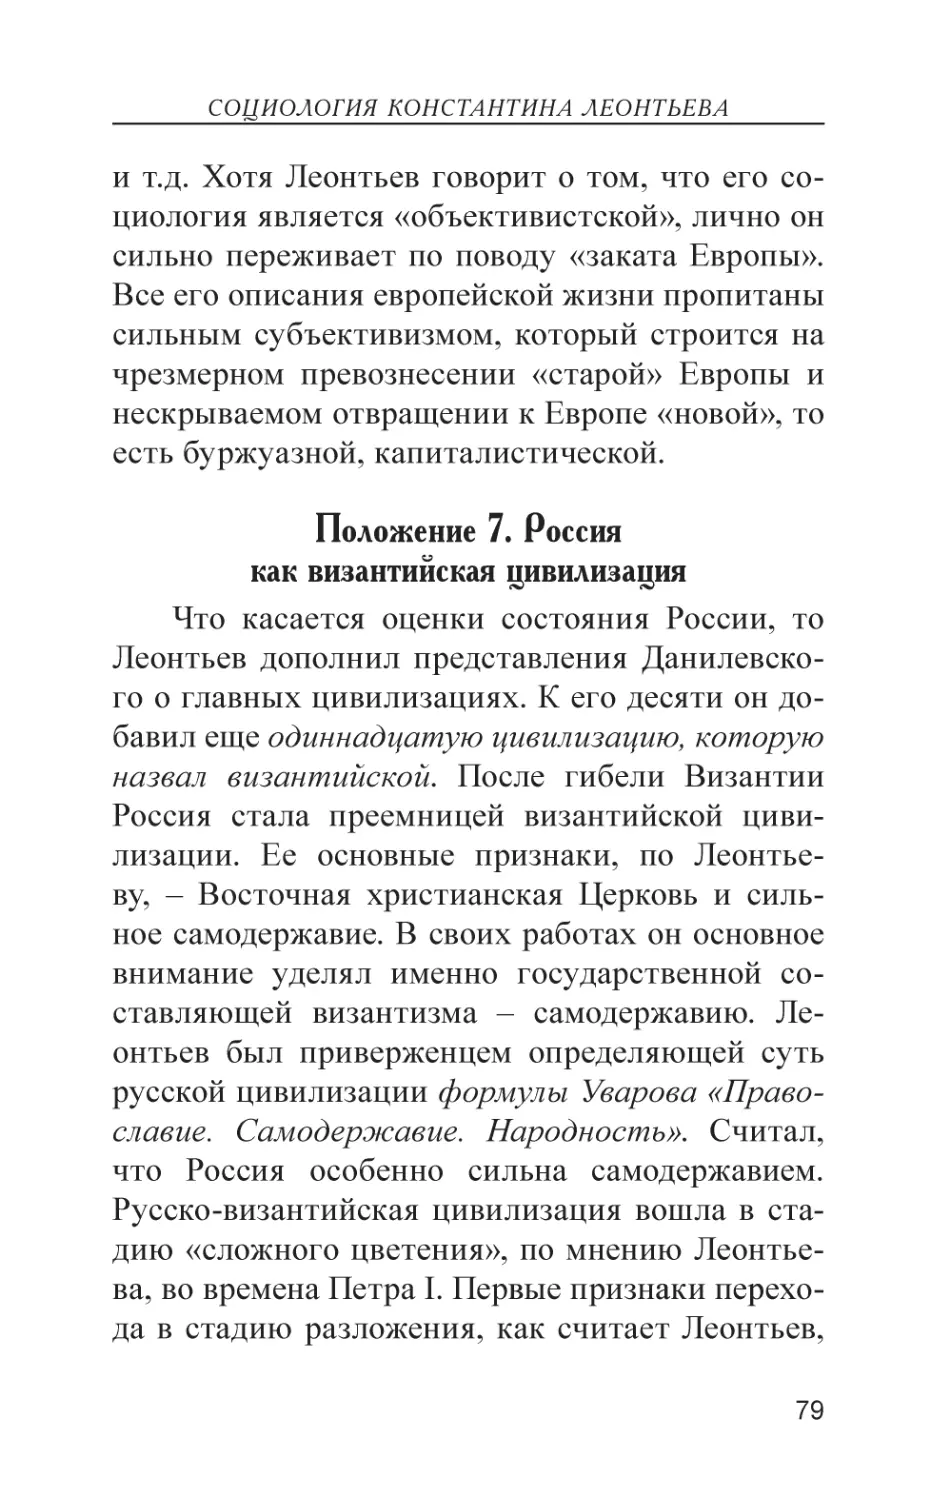 Положение 6. Россия как византийская цивилизация